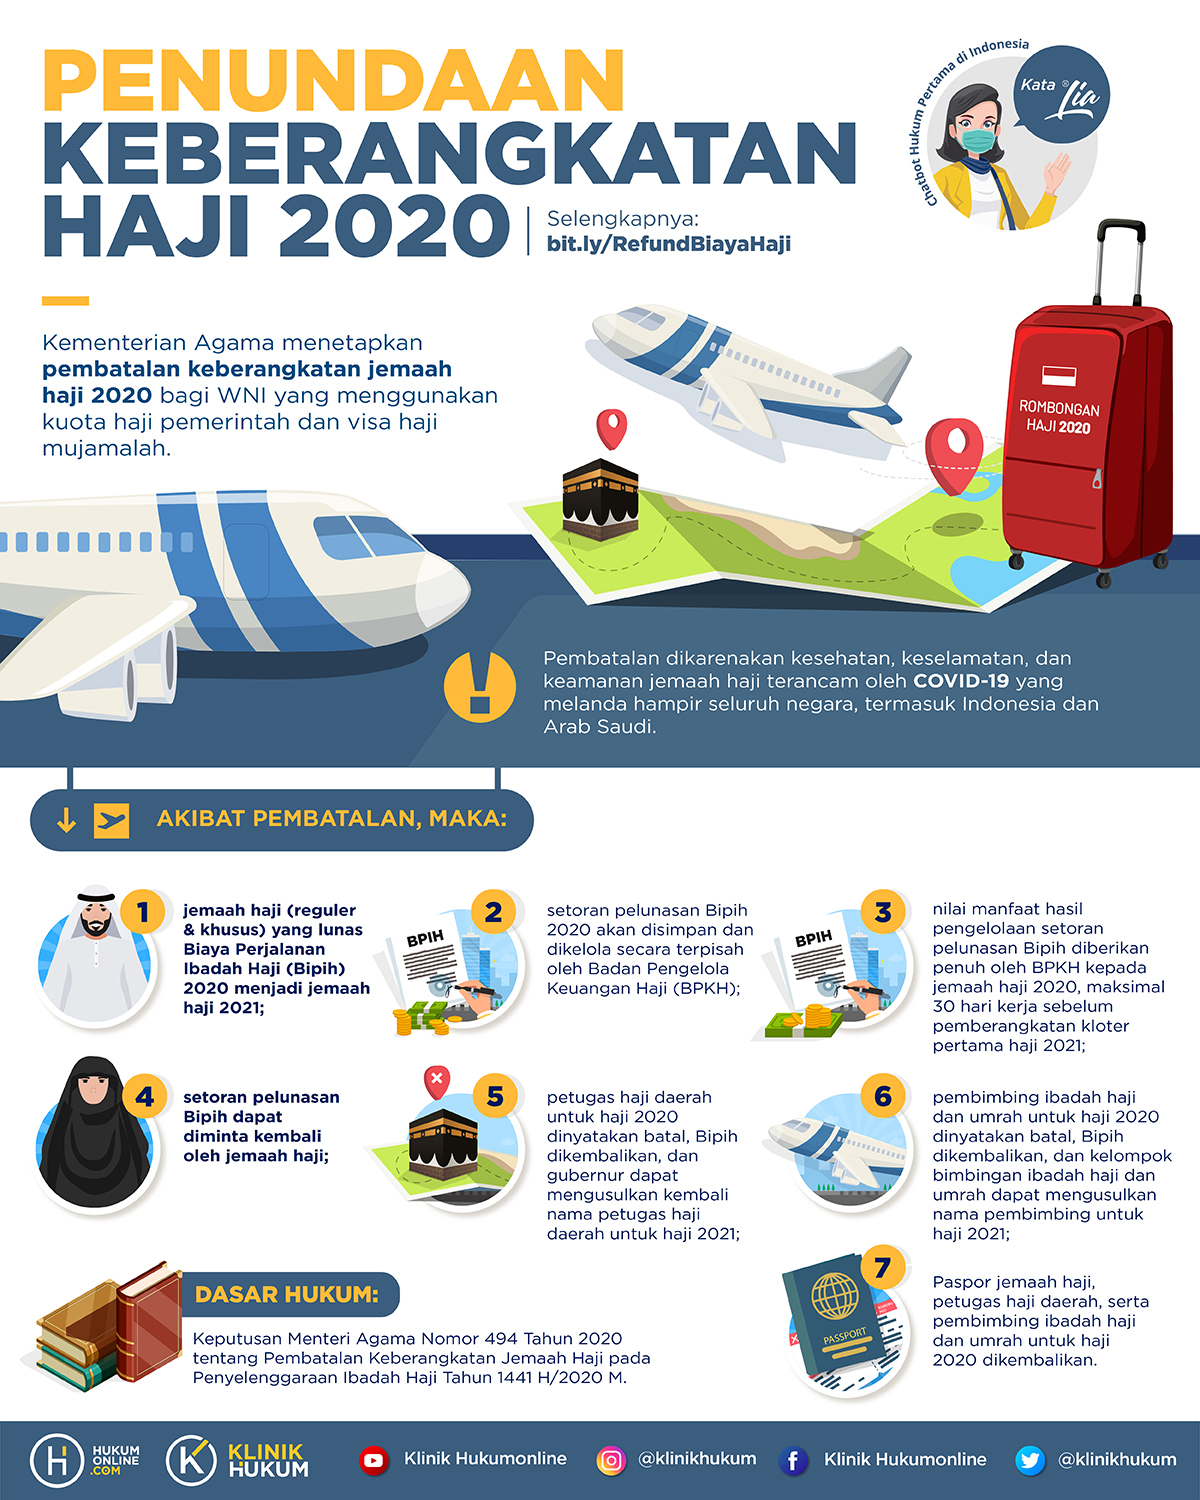 Penundaan Keberangkatan Haji 2020